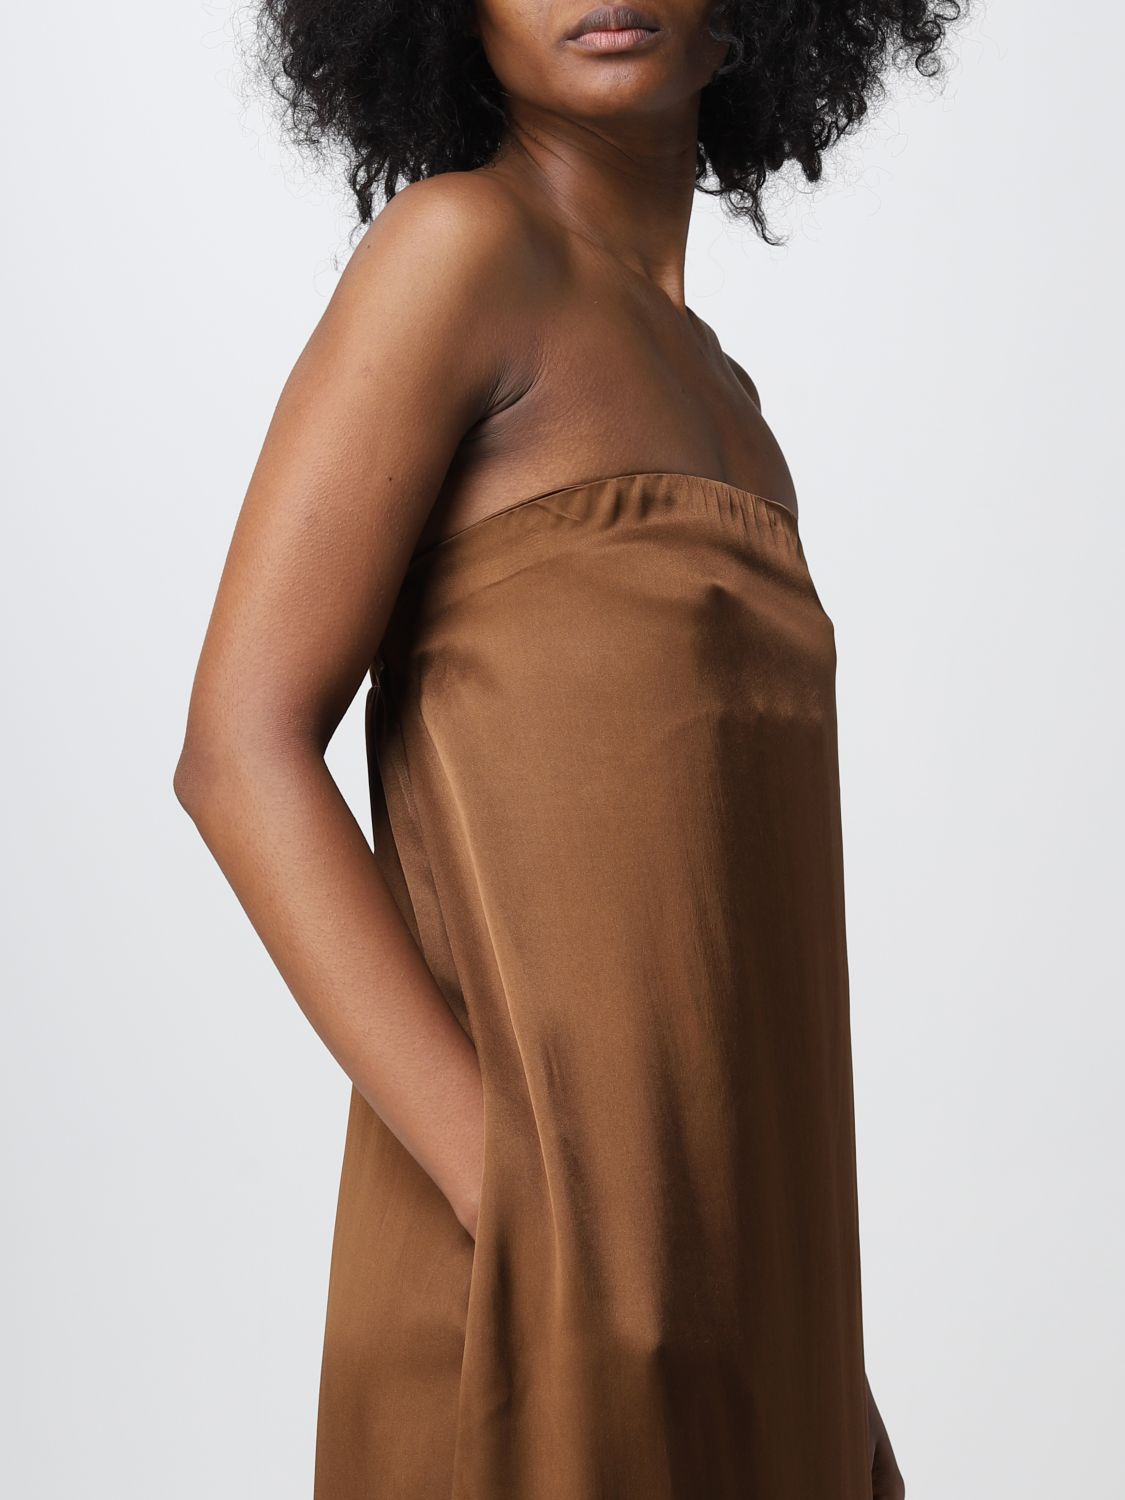 Vestido Semicouture: Vestido Semicouture para mujer marrón oscuro 3